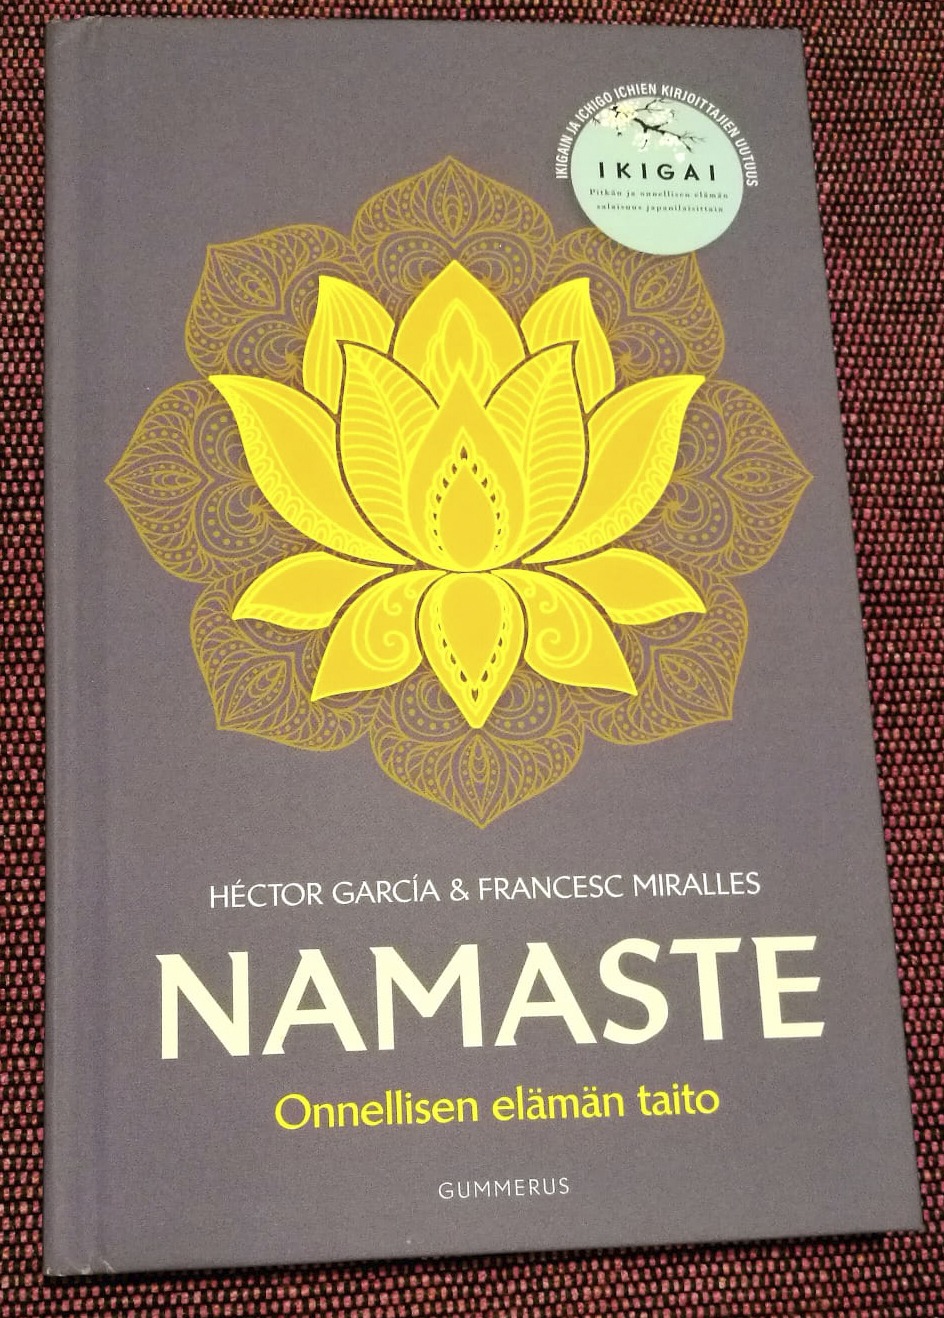 Namaste, Onnellisen elämän taito, kirjan arvio